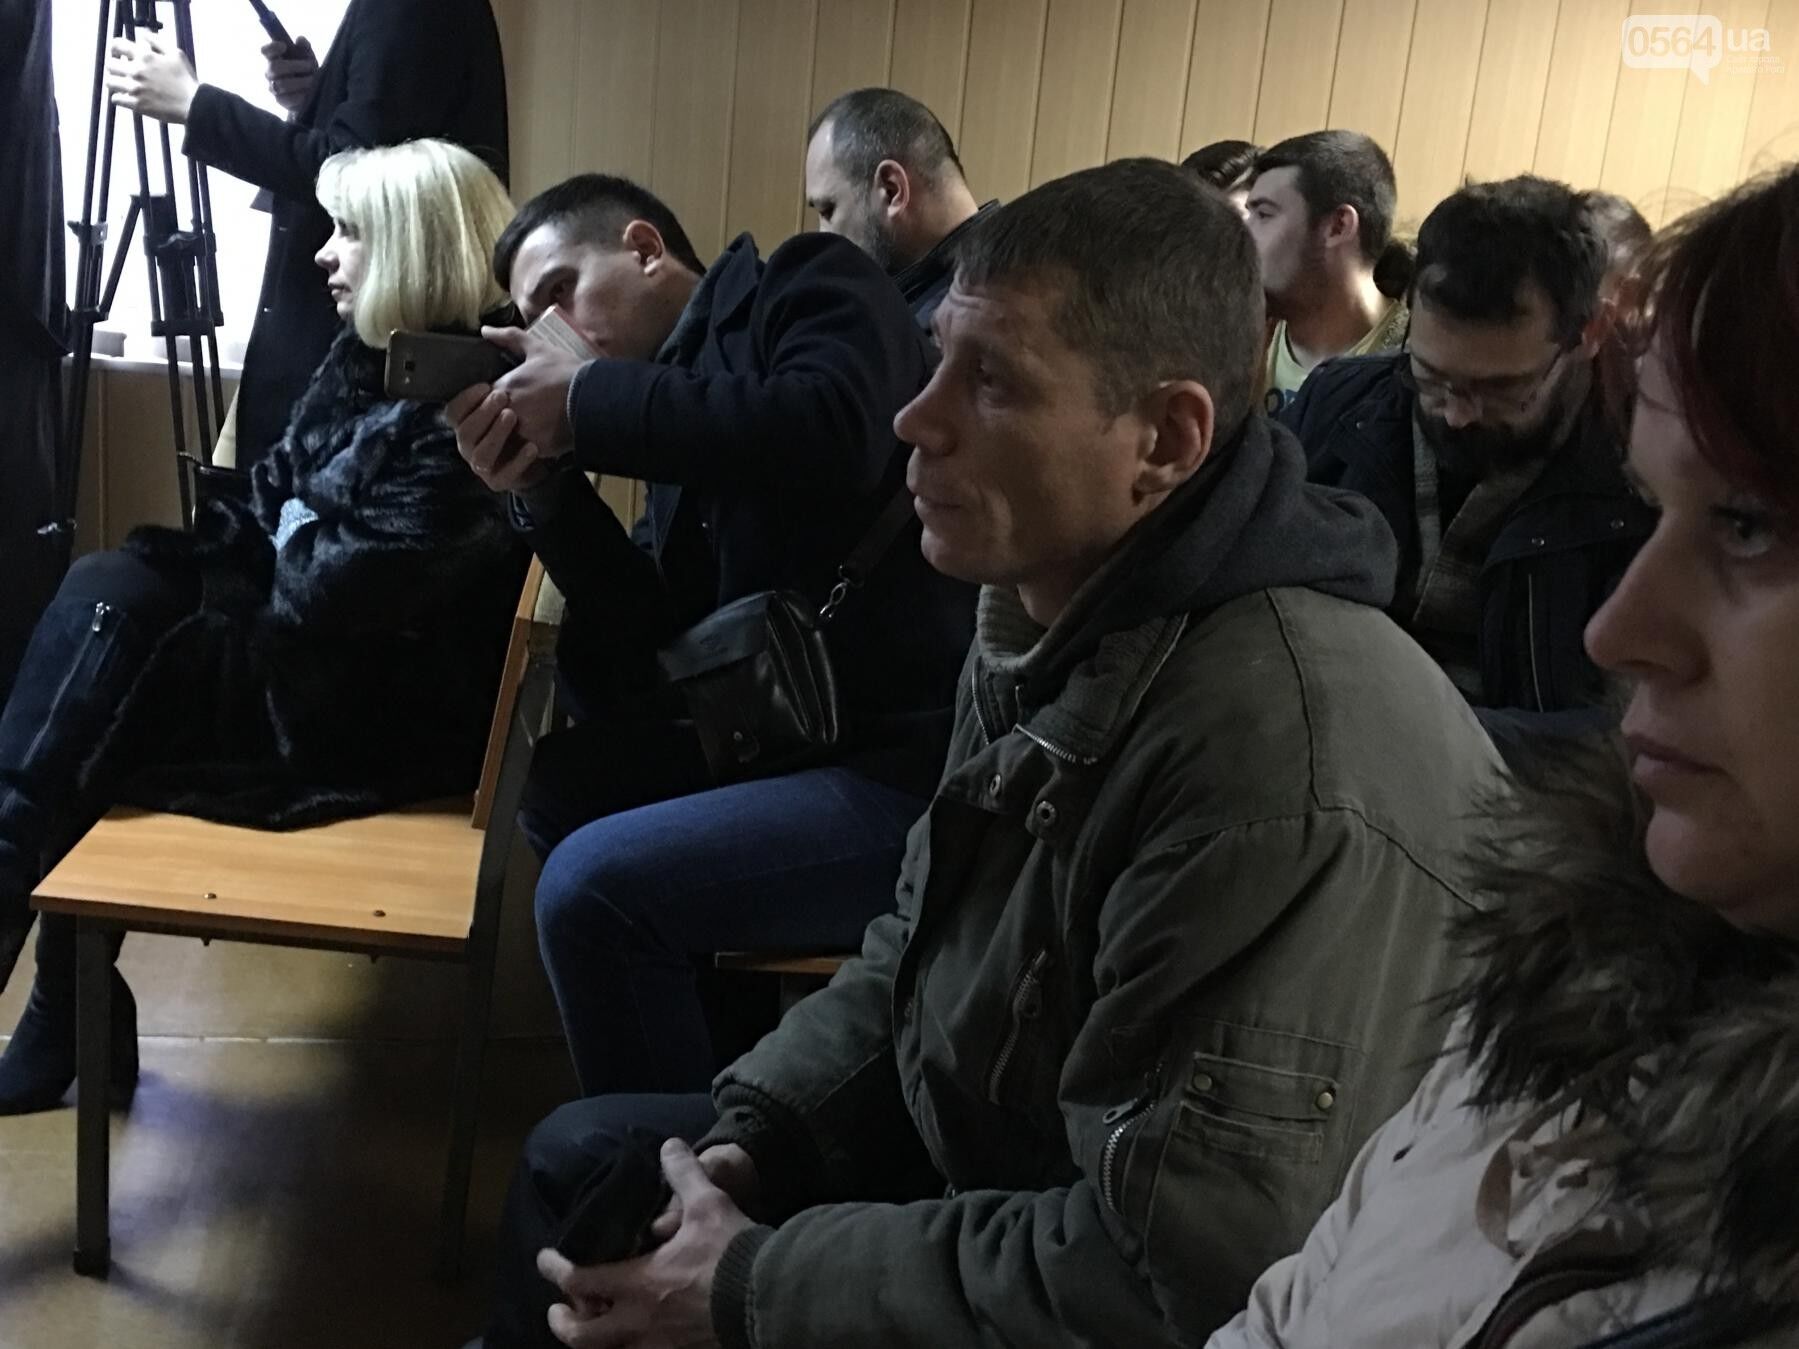 "Готов идти в АТО": надругавшийся над флагом Украины вандал публично покаялся